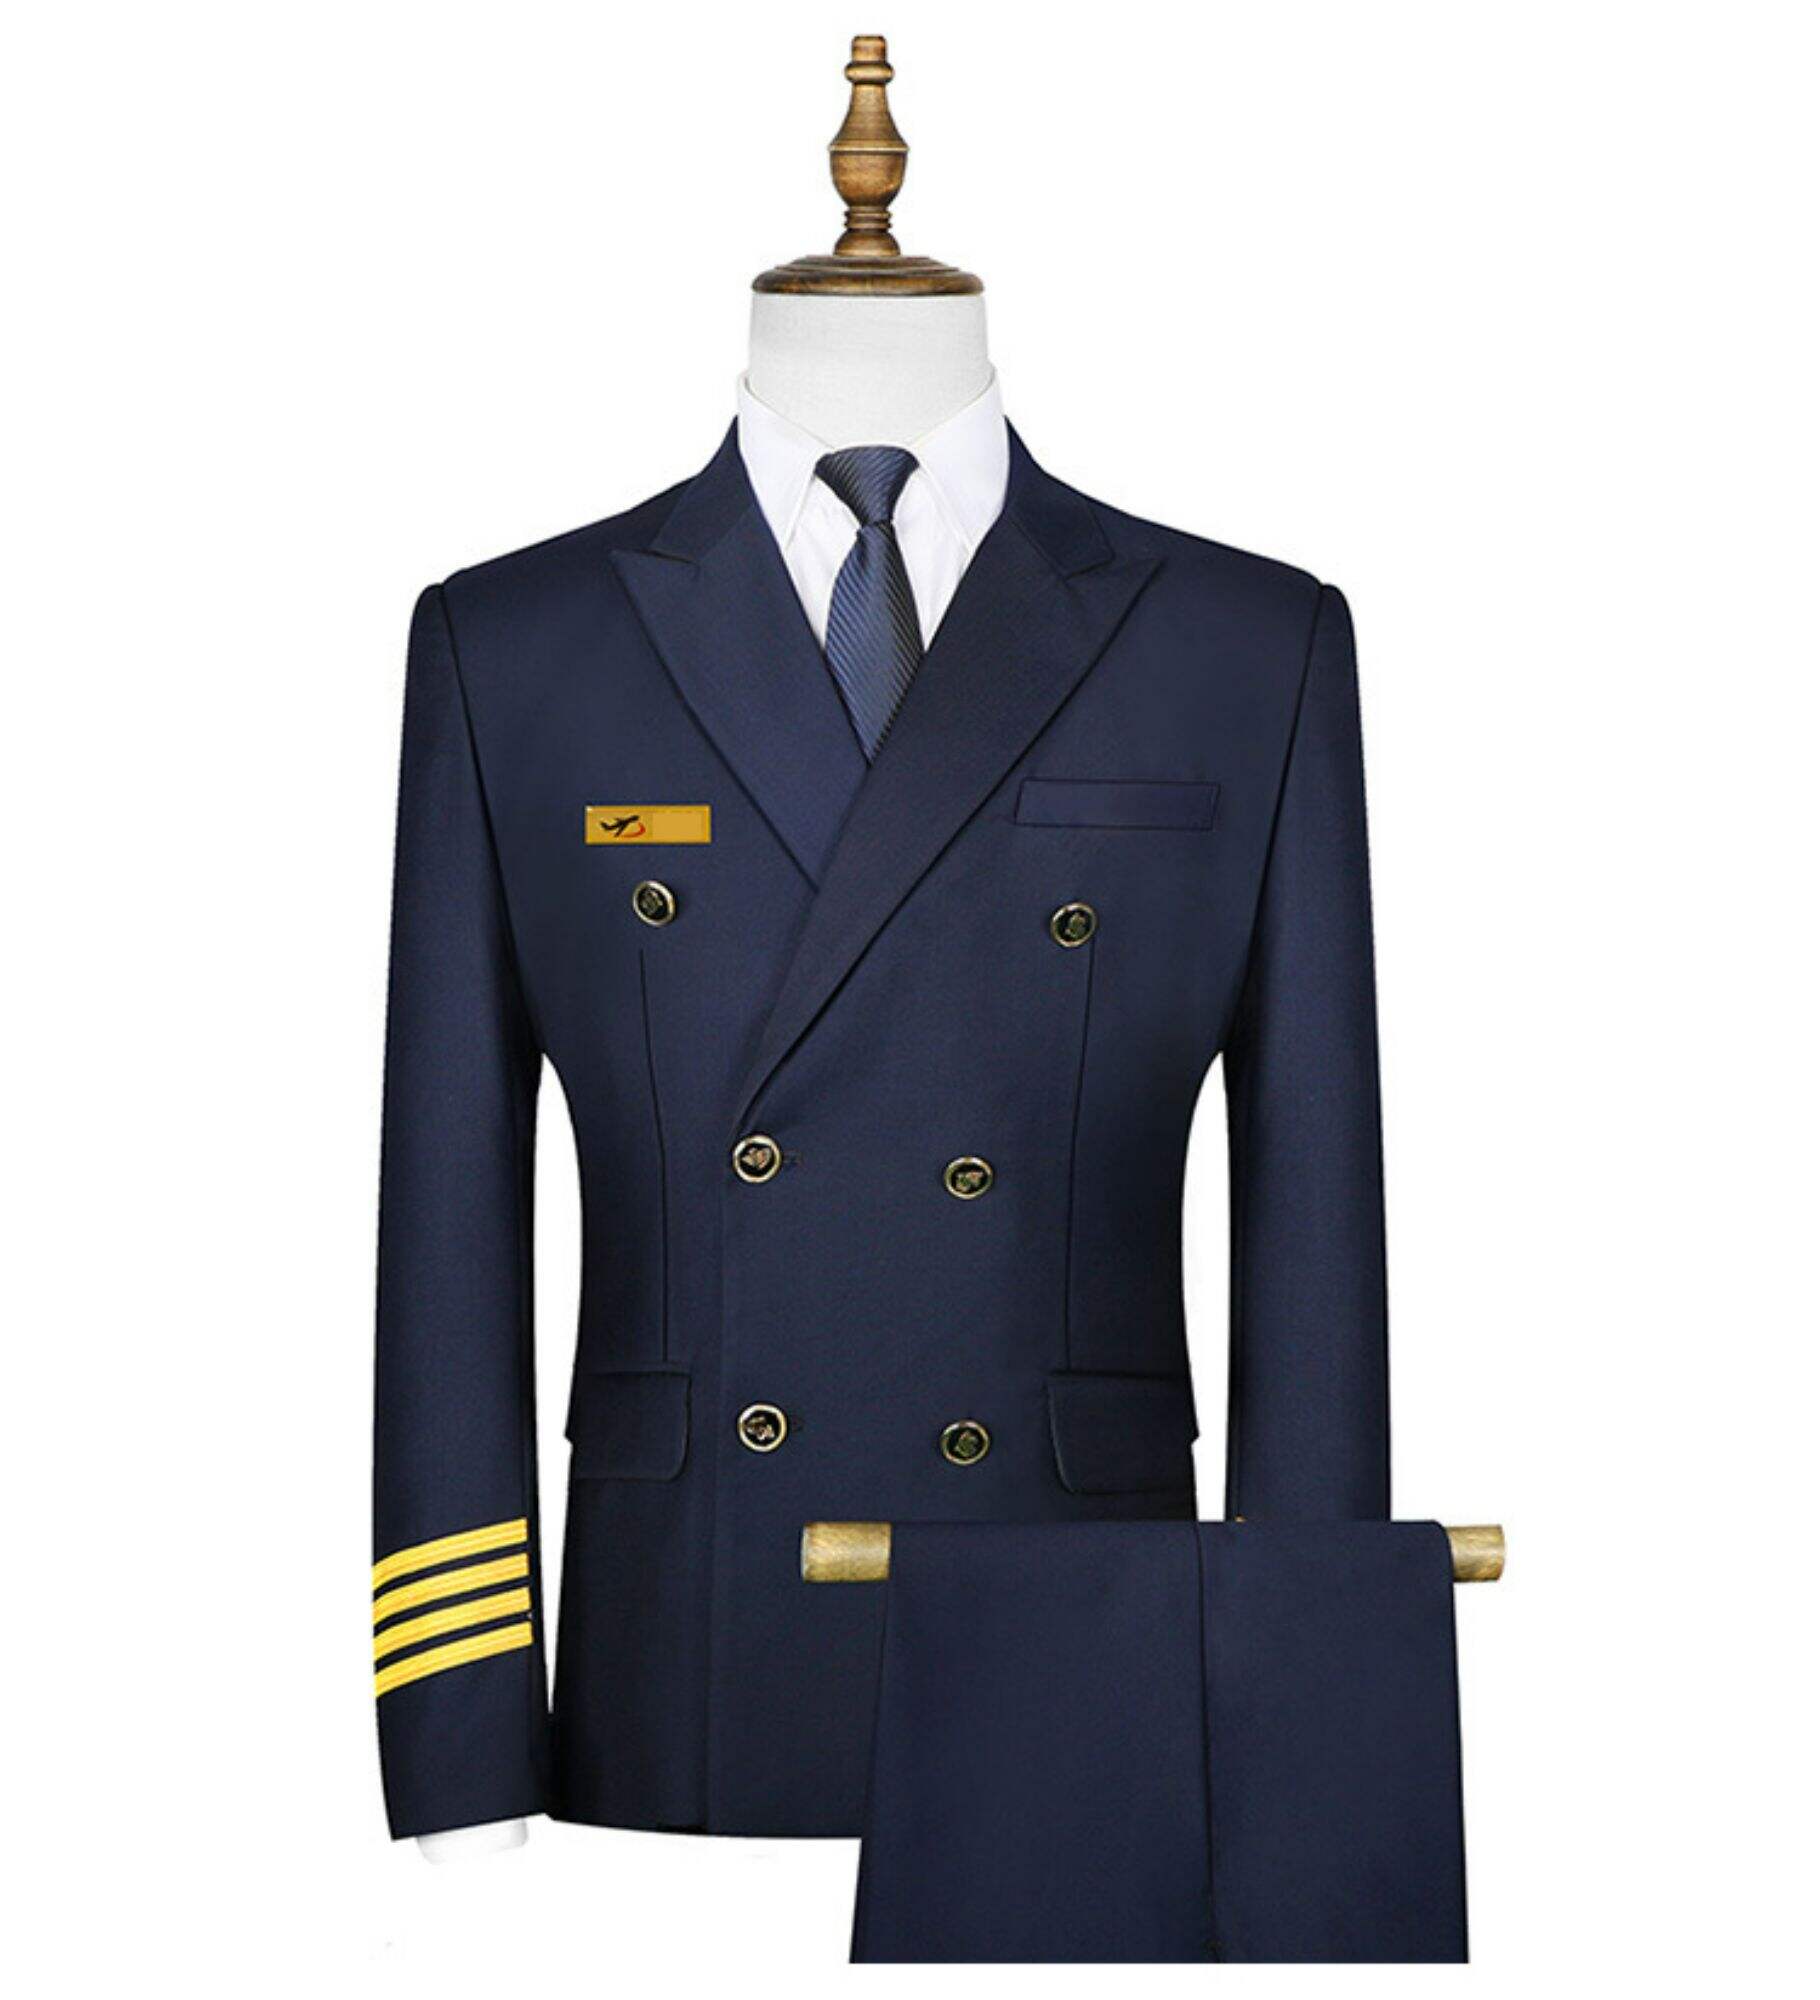 Unisex luxury Pilot Uniform Avivation Attendant Formal  Suit For Captain